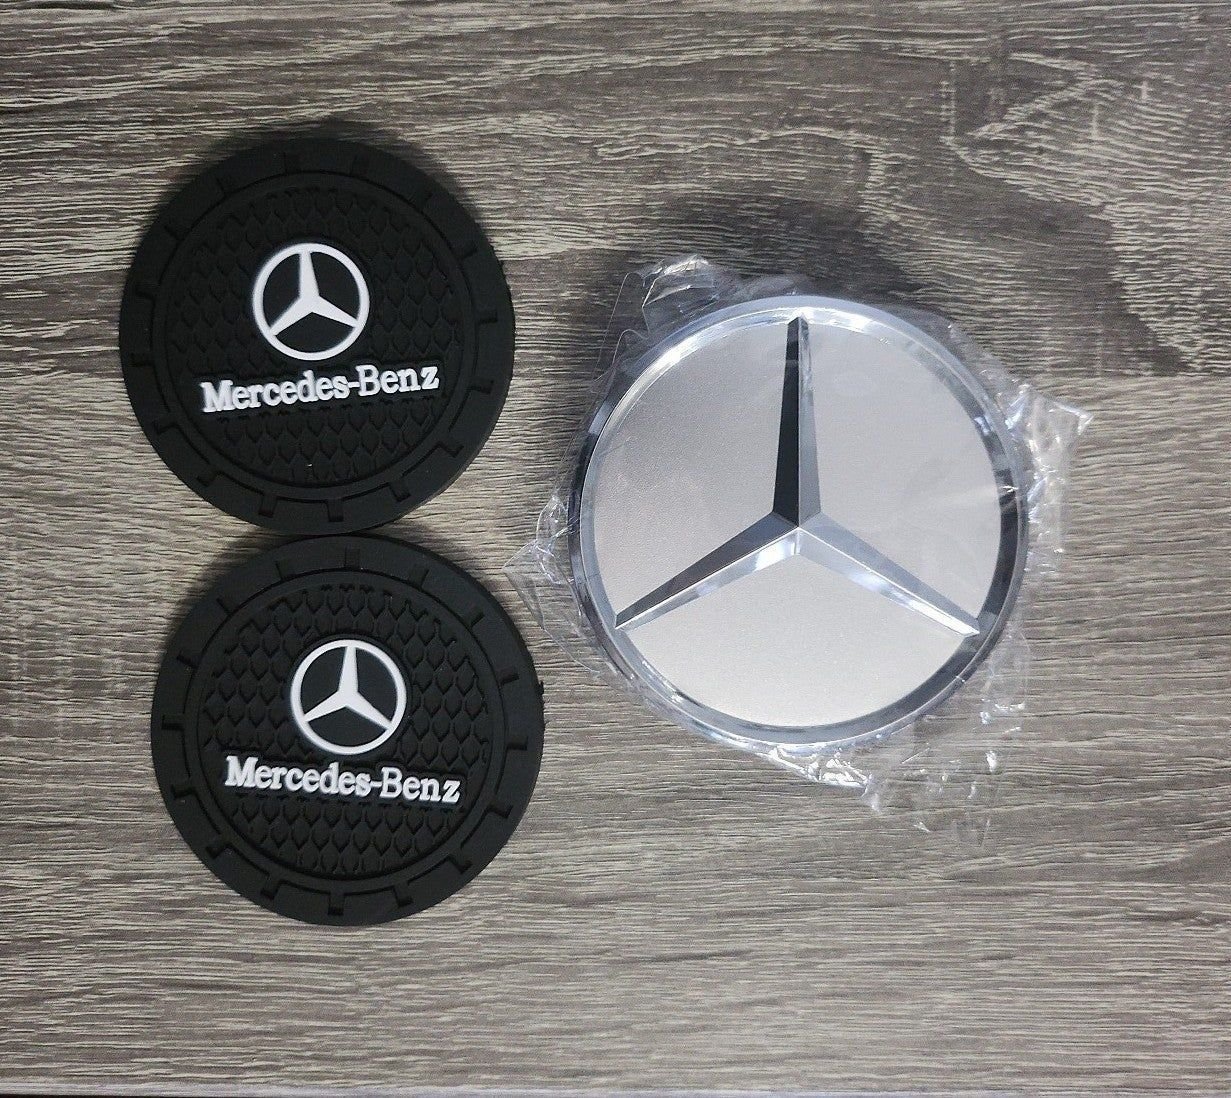 Mercedes-Benz car accessories dAL8hOX4D